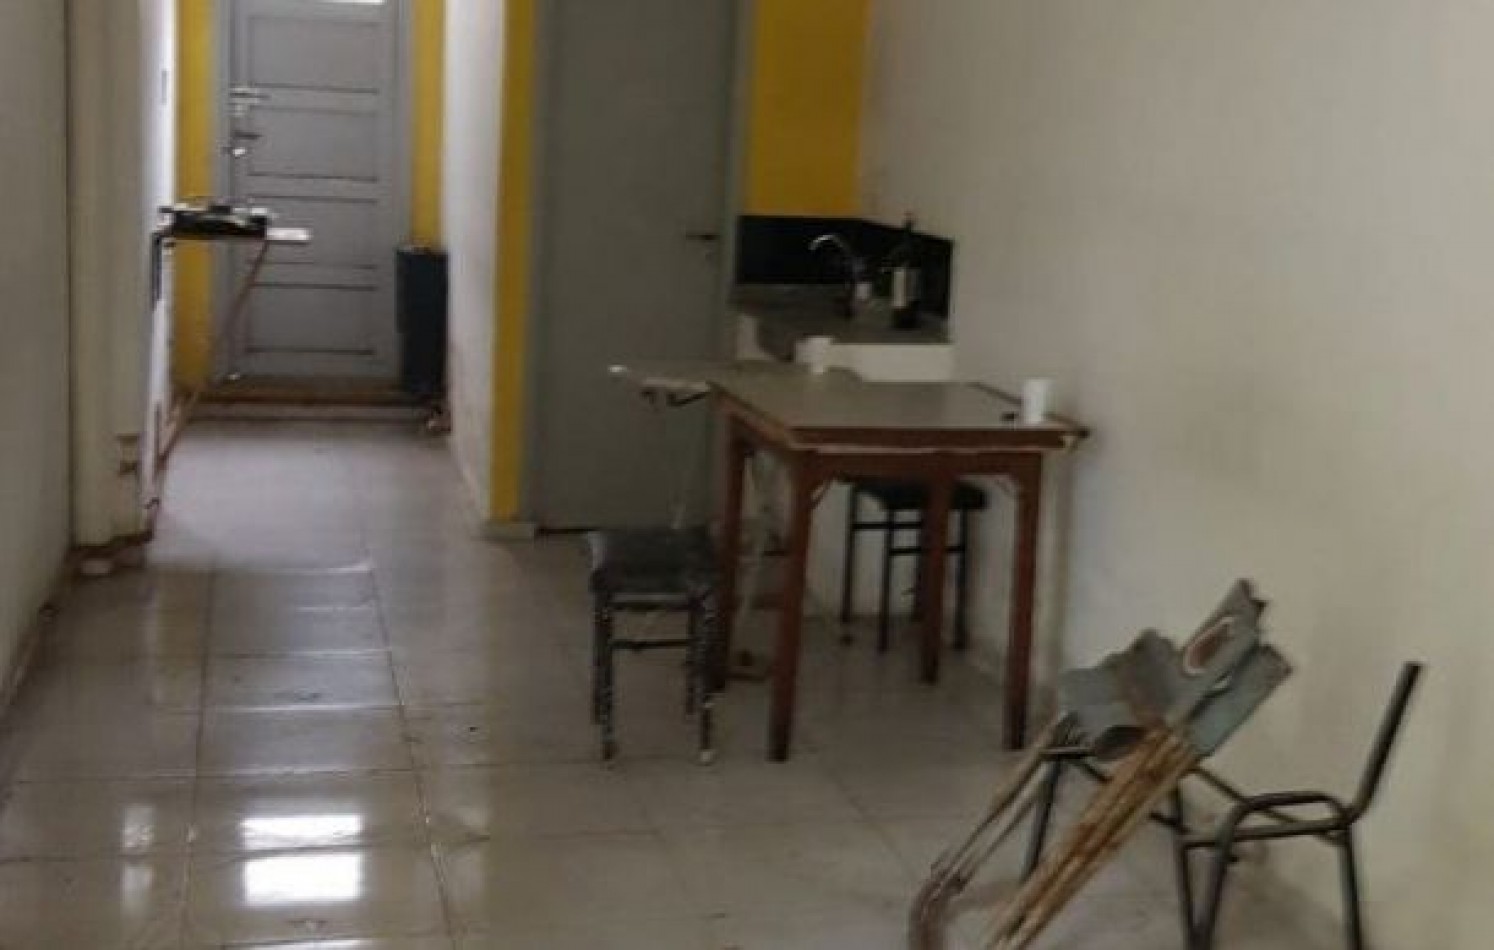 Local comercial con entre piso+ otro local chico+ vivienda a restaurar. Villa Primera